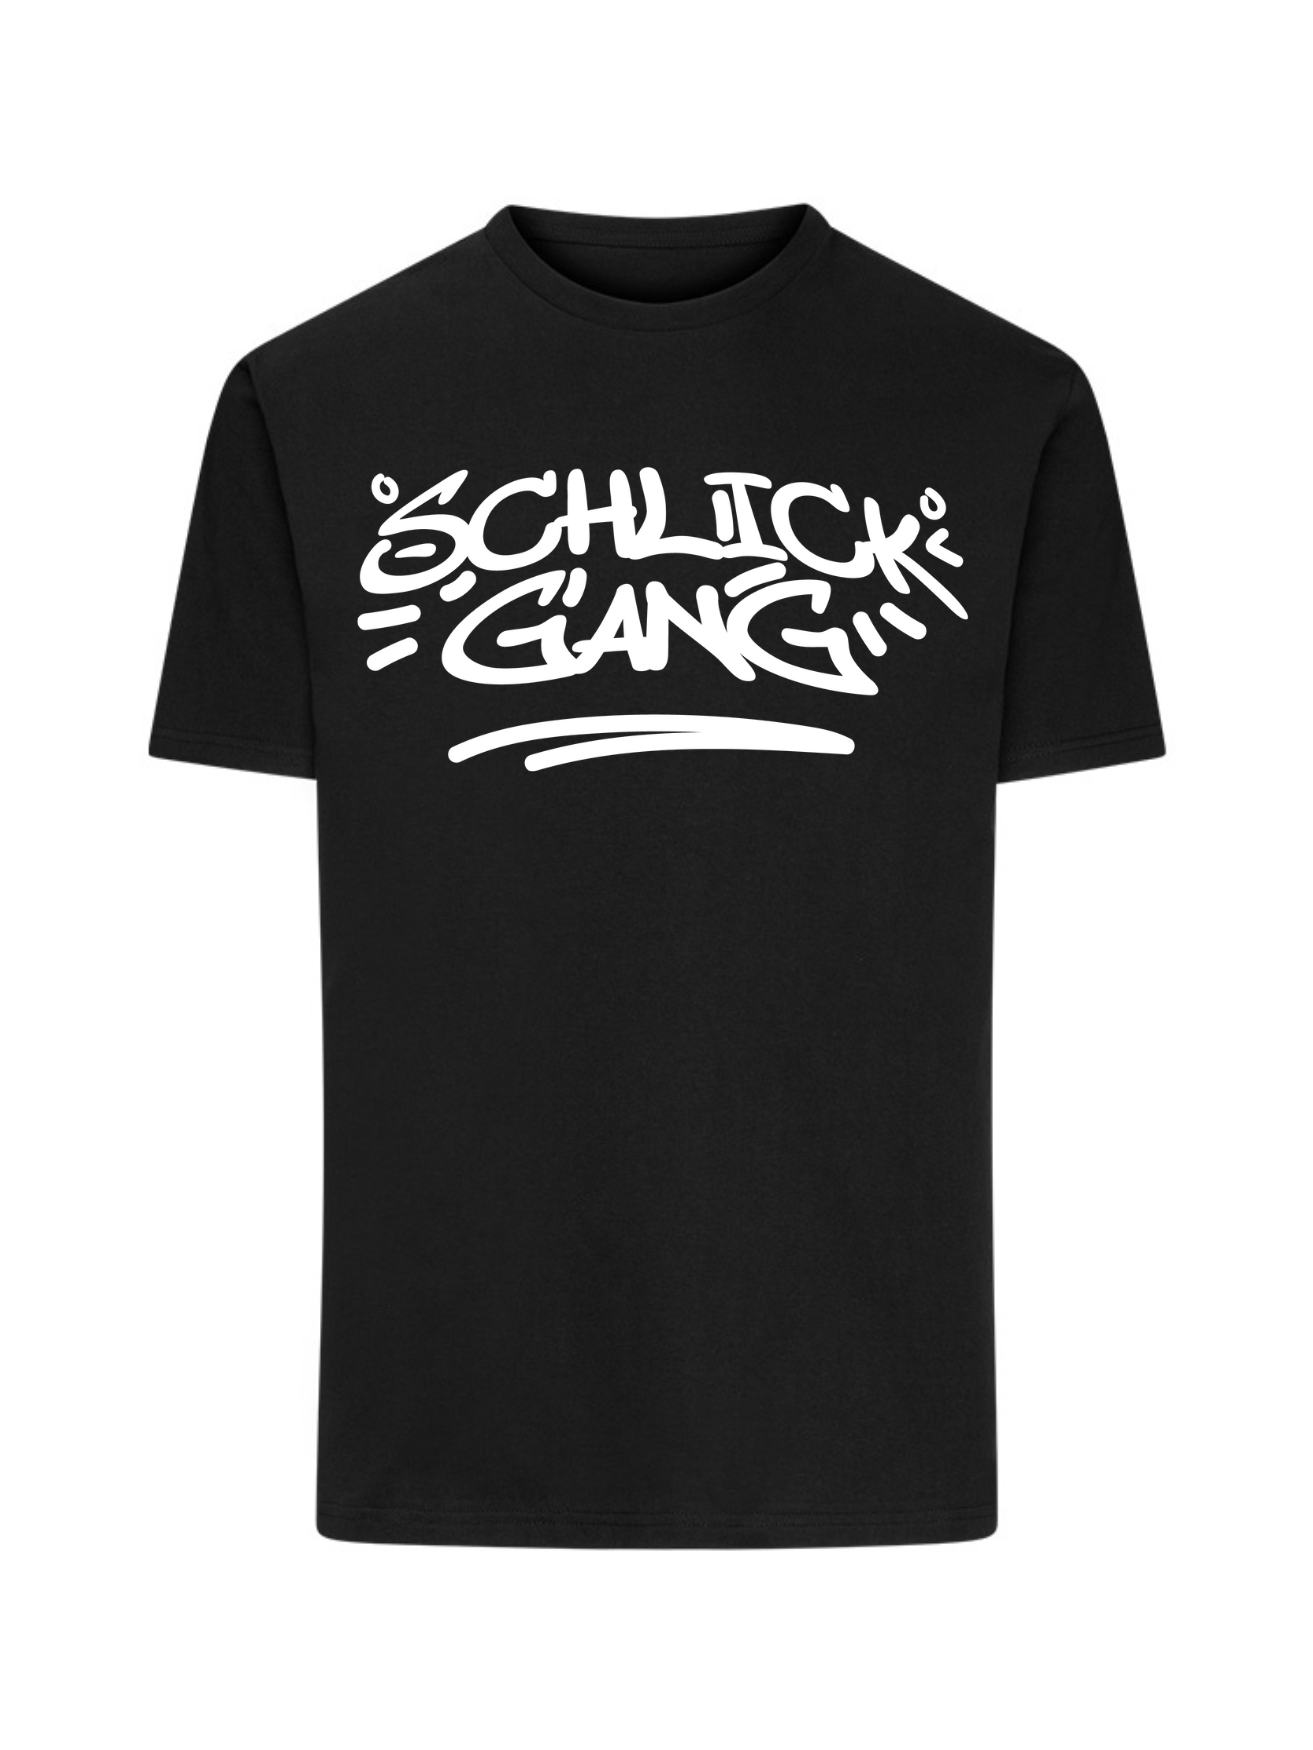 Schlick Gang - T-Shirt